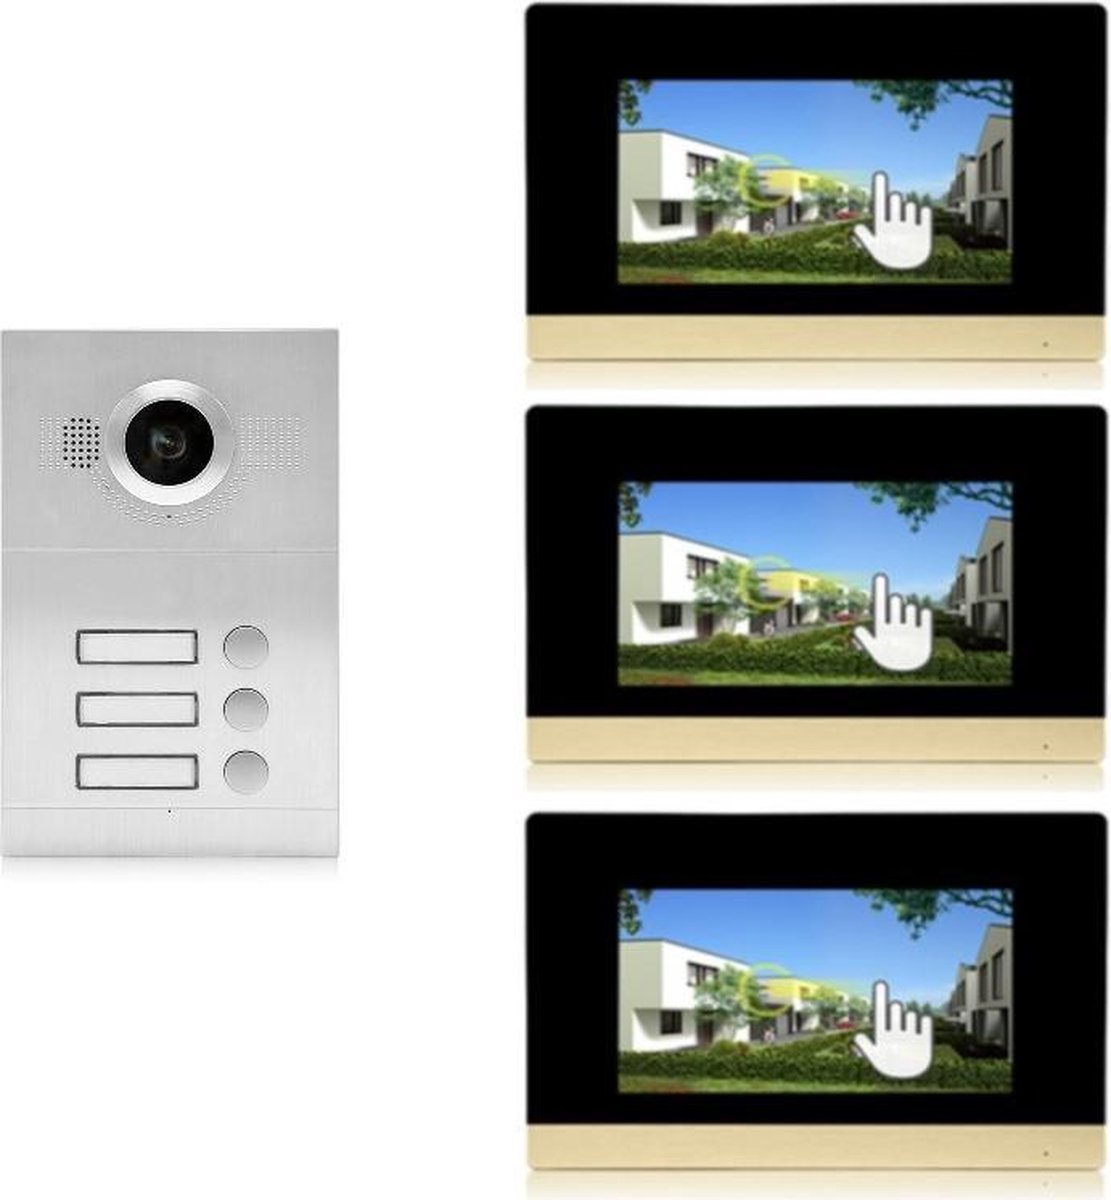 ID 3 knops buitenpaneel met 3 binnen-monitoren | Intercom | Video deurbel | IntercomDirect